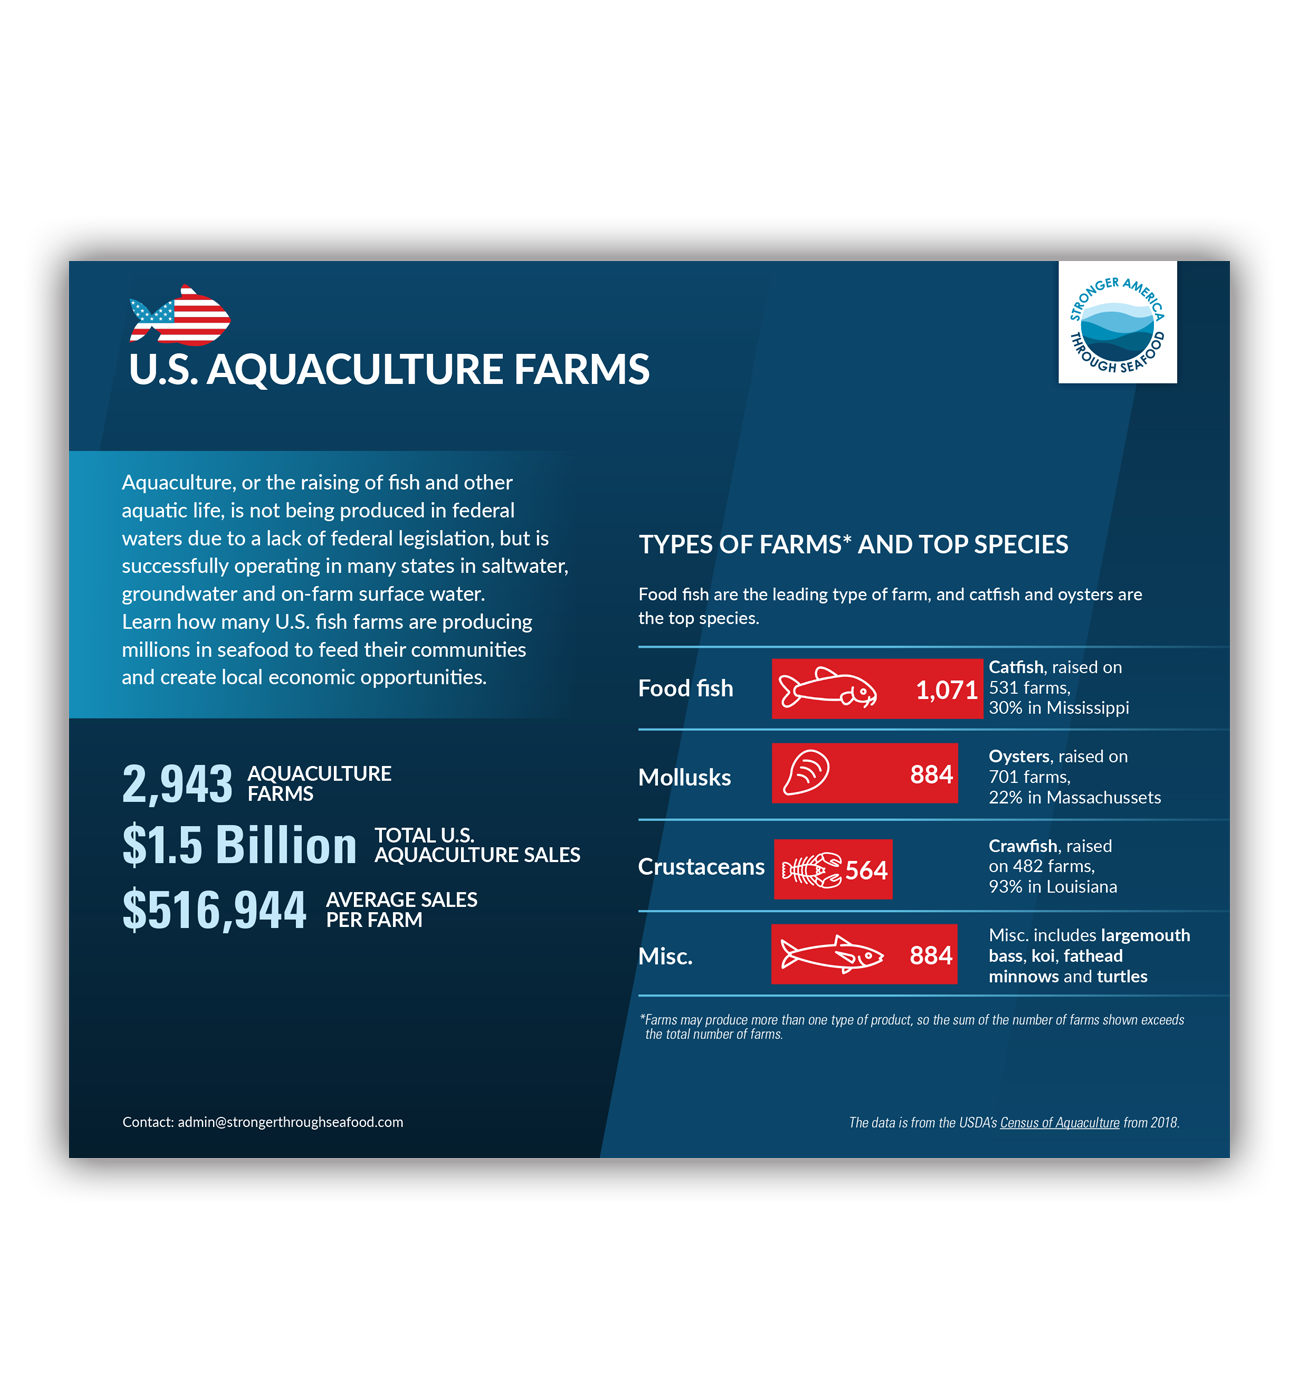 U.S. Aquaculture Farms